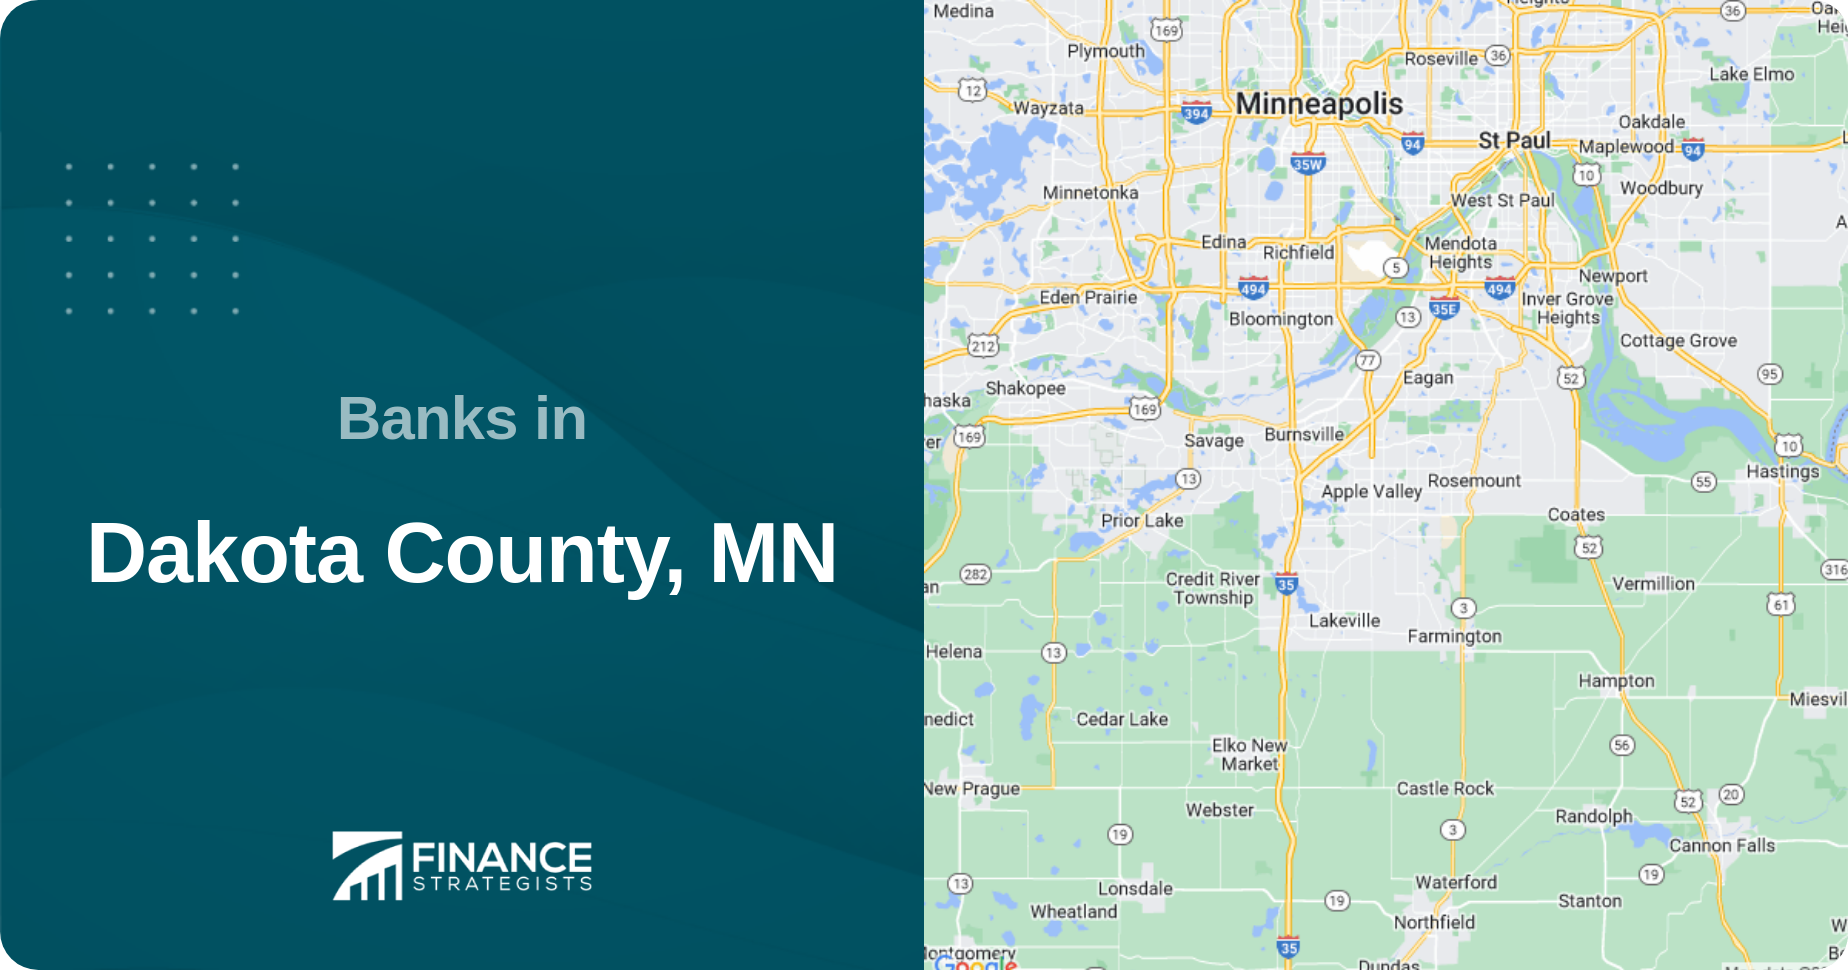 Banks in Dakota County, MN